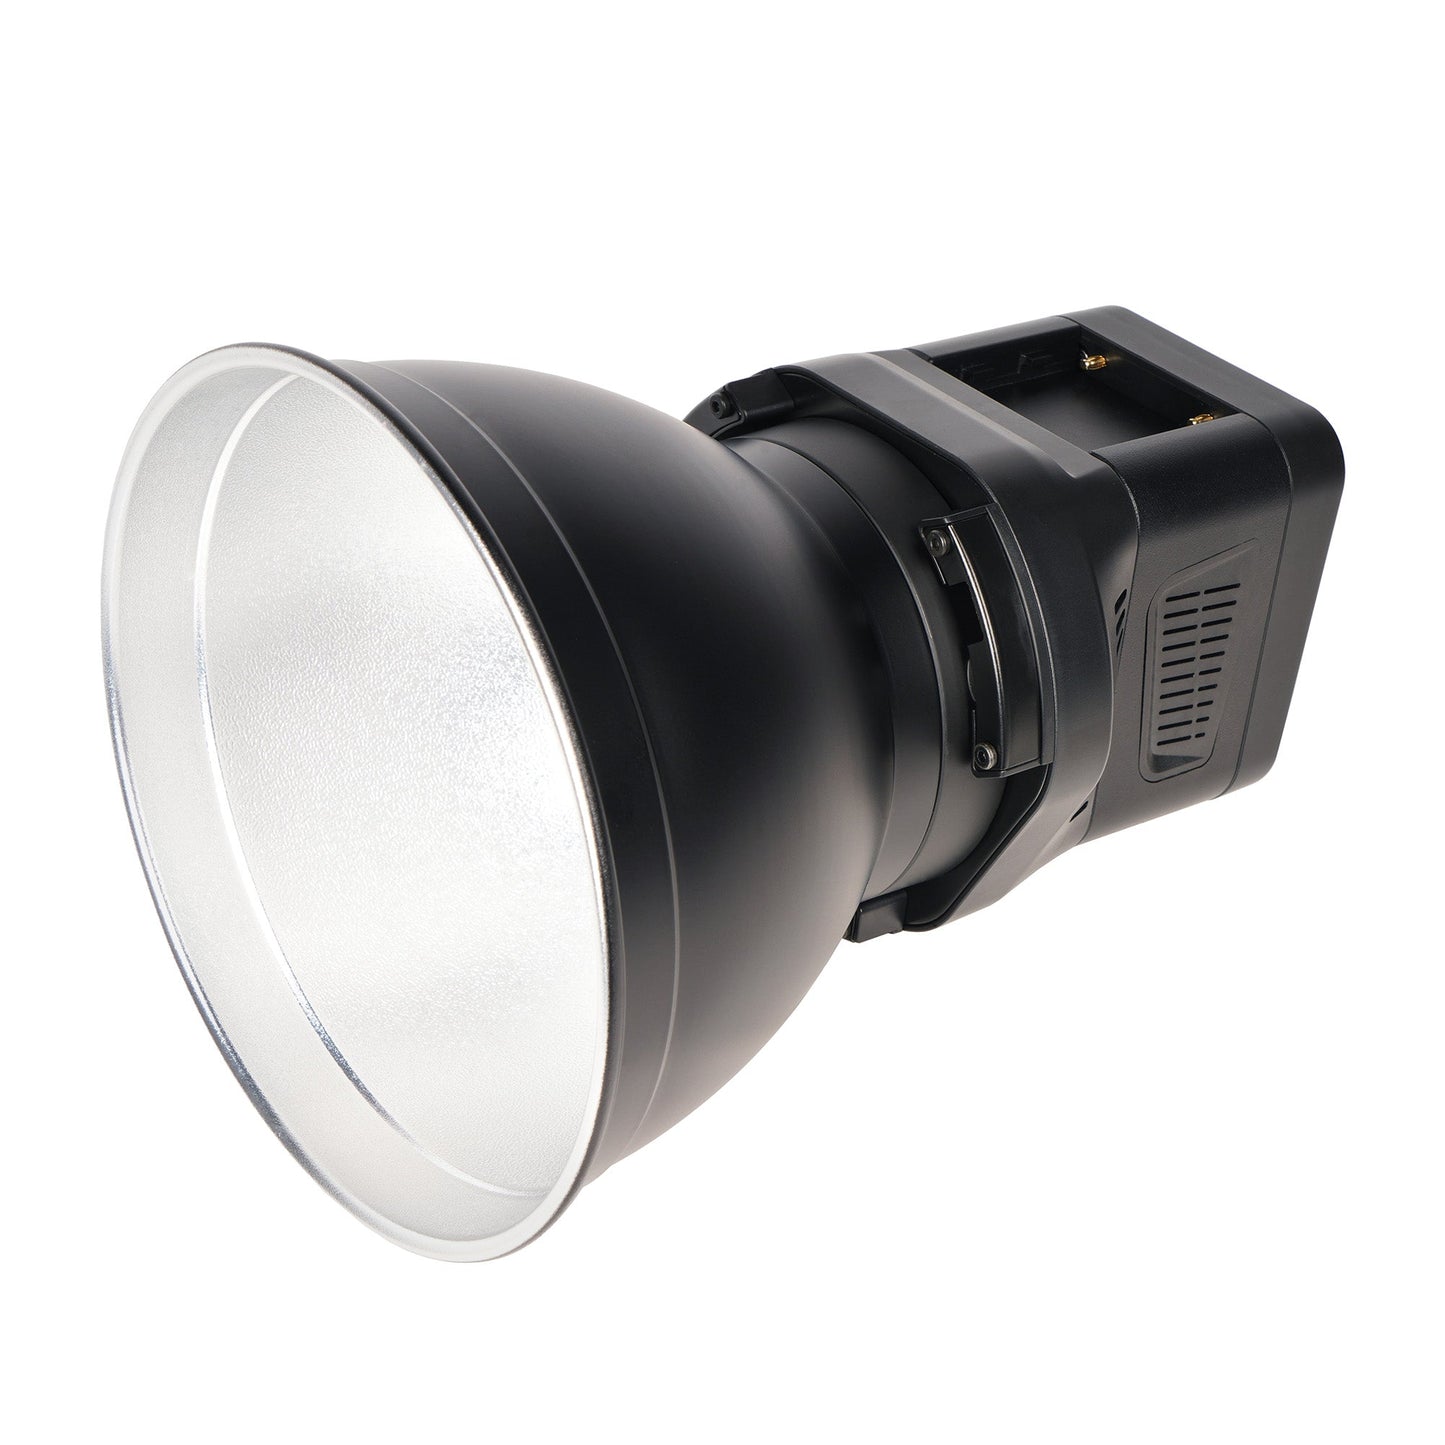 SIRUI C60R LED-Dauerlicht RGB-360m-Color 60W - superleise 20dB - Foto- + Videoleuchte